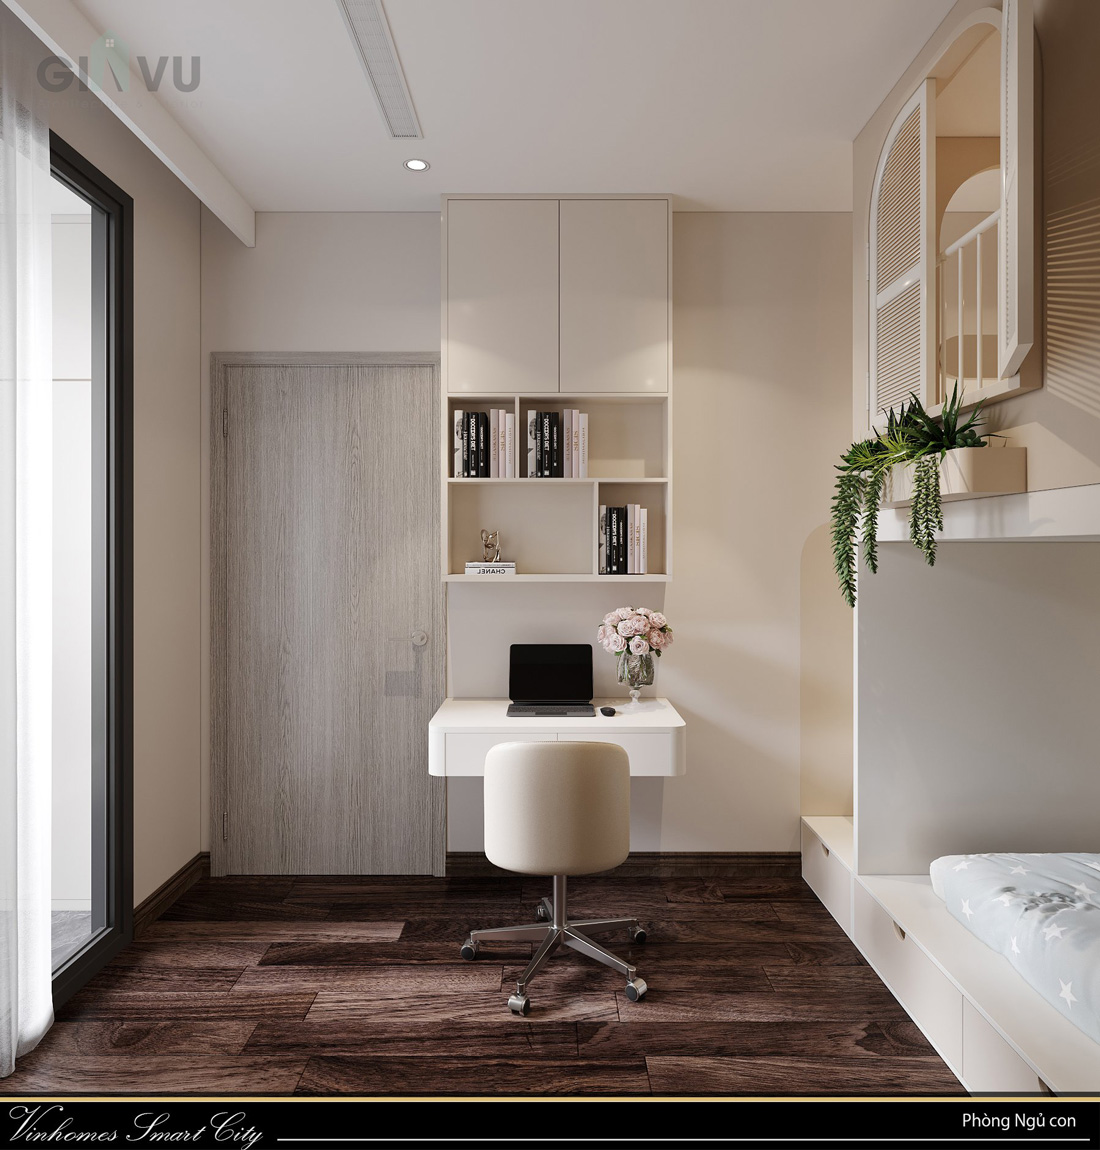 thiết kế nội thất căn hộ Masteri smart City căn hộ 65m2 11